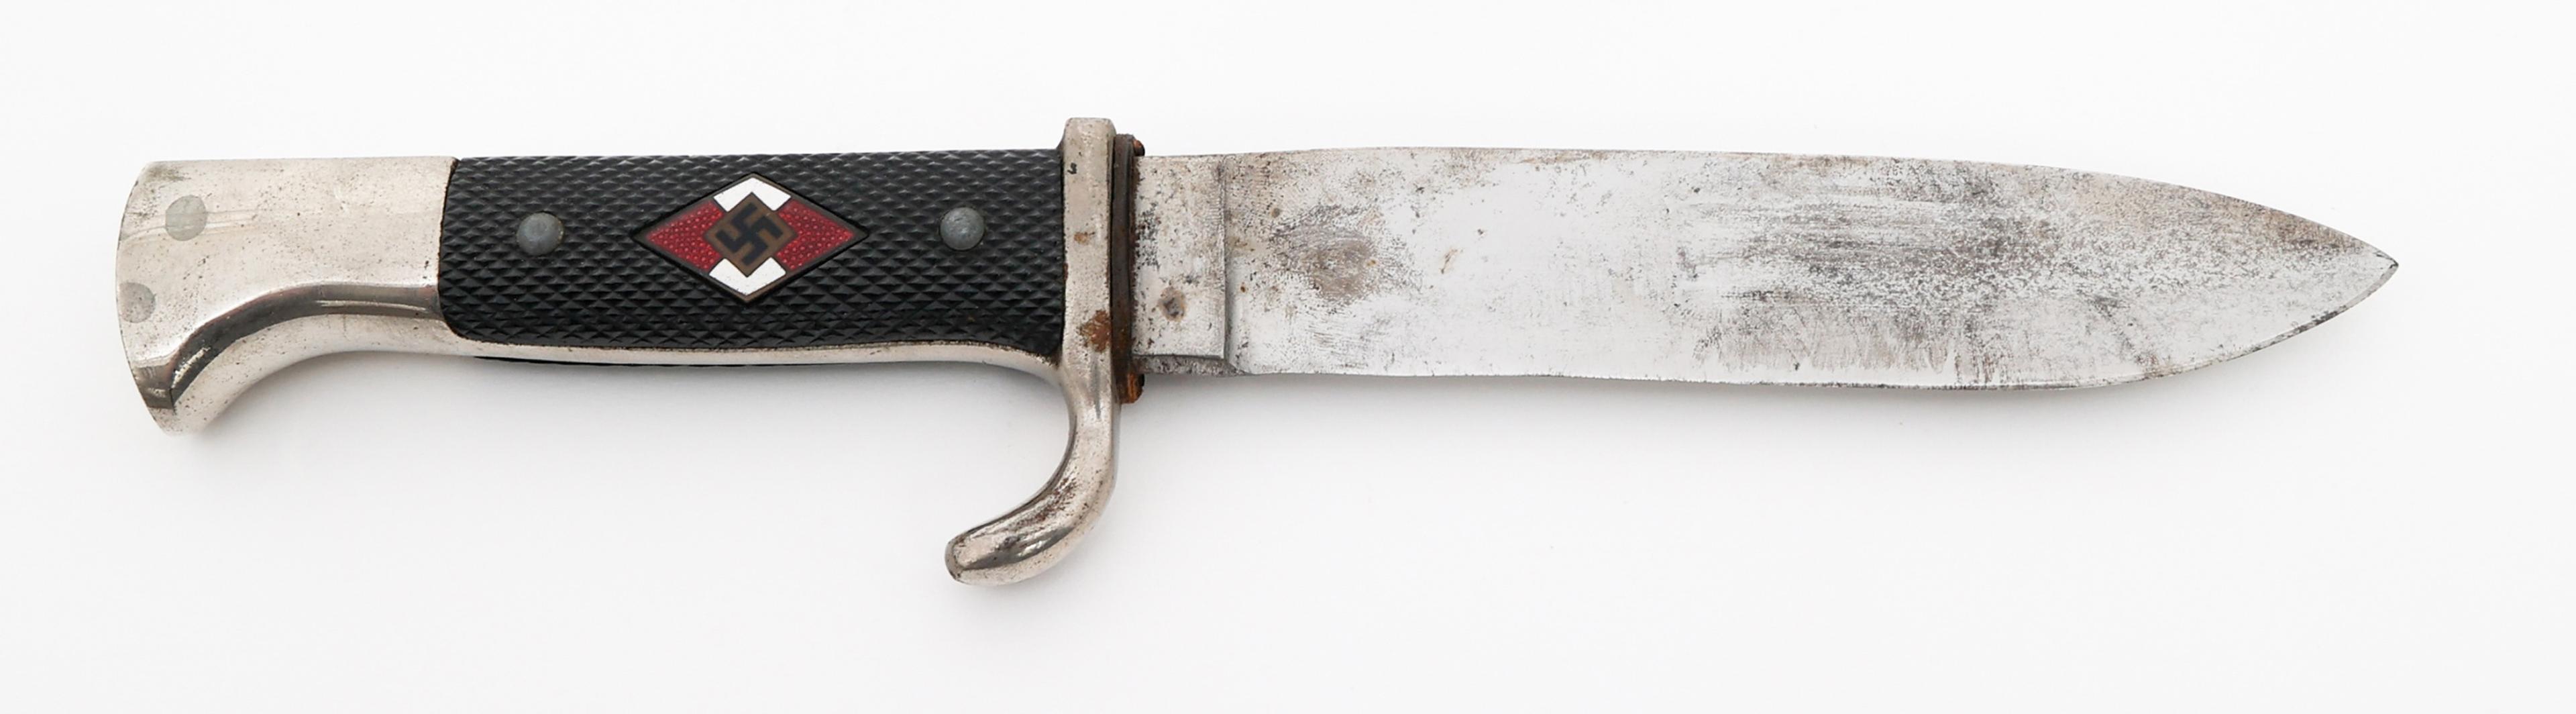 WWII GERMAN HITLER YOUTH KNIFE by ANTON WINGEN JR